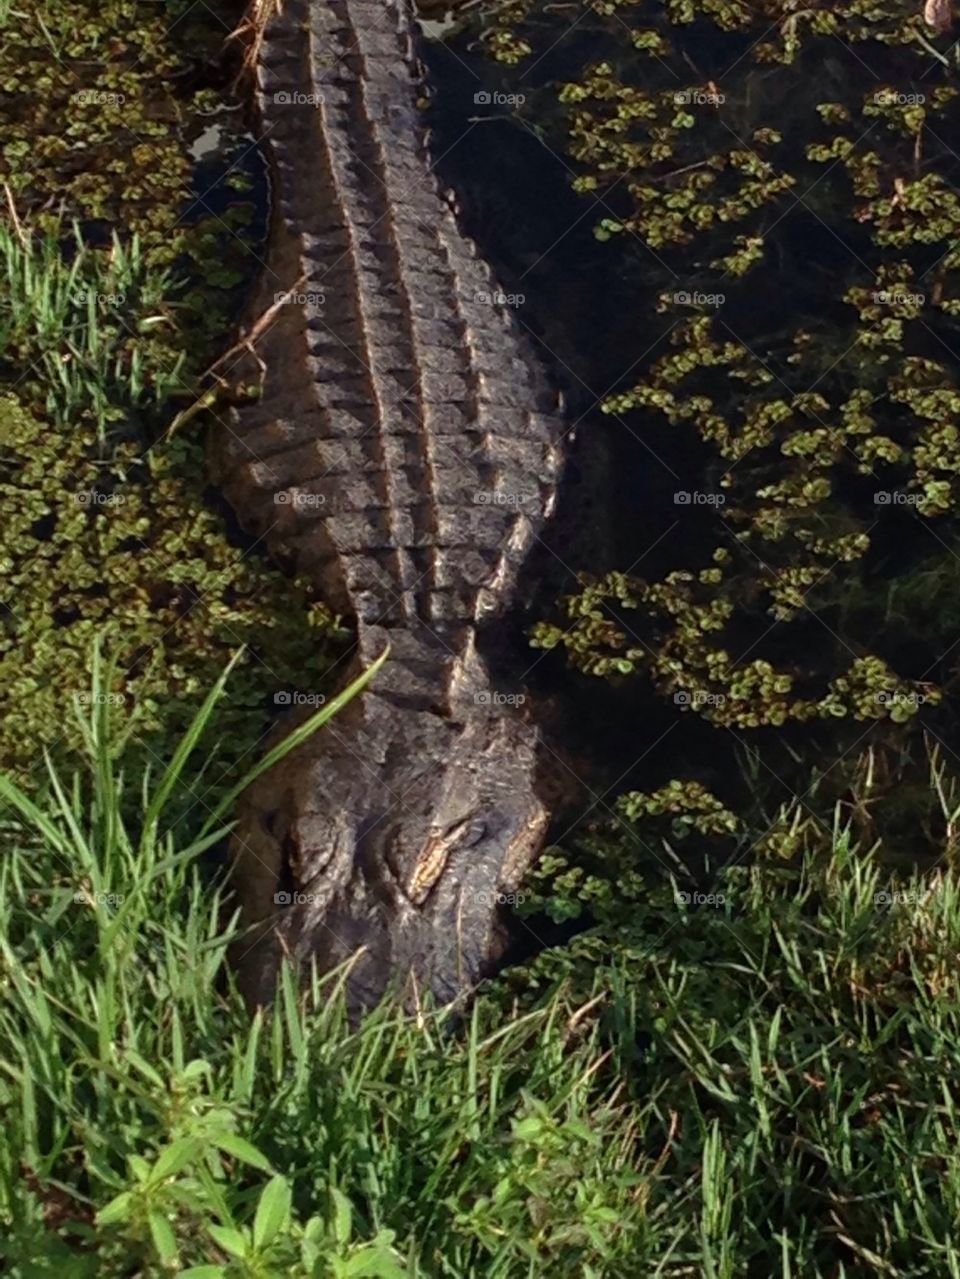 Alligator soaking up the sunshine